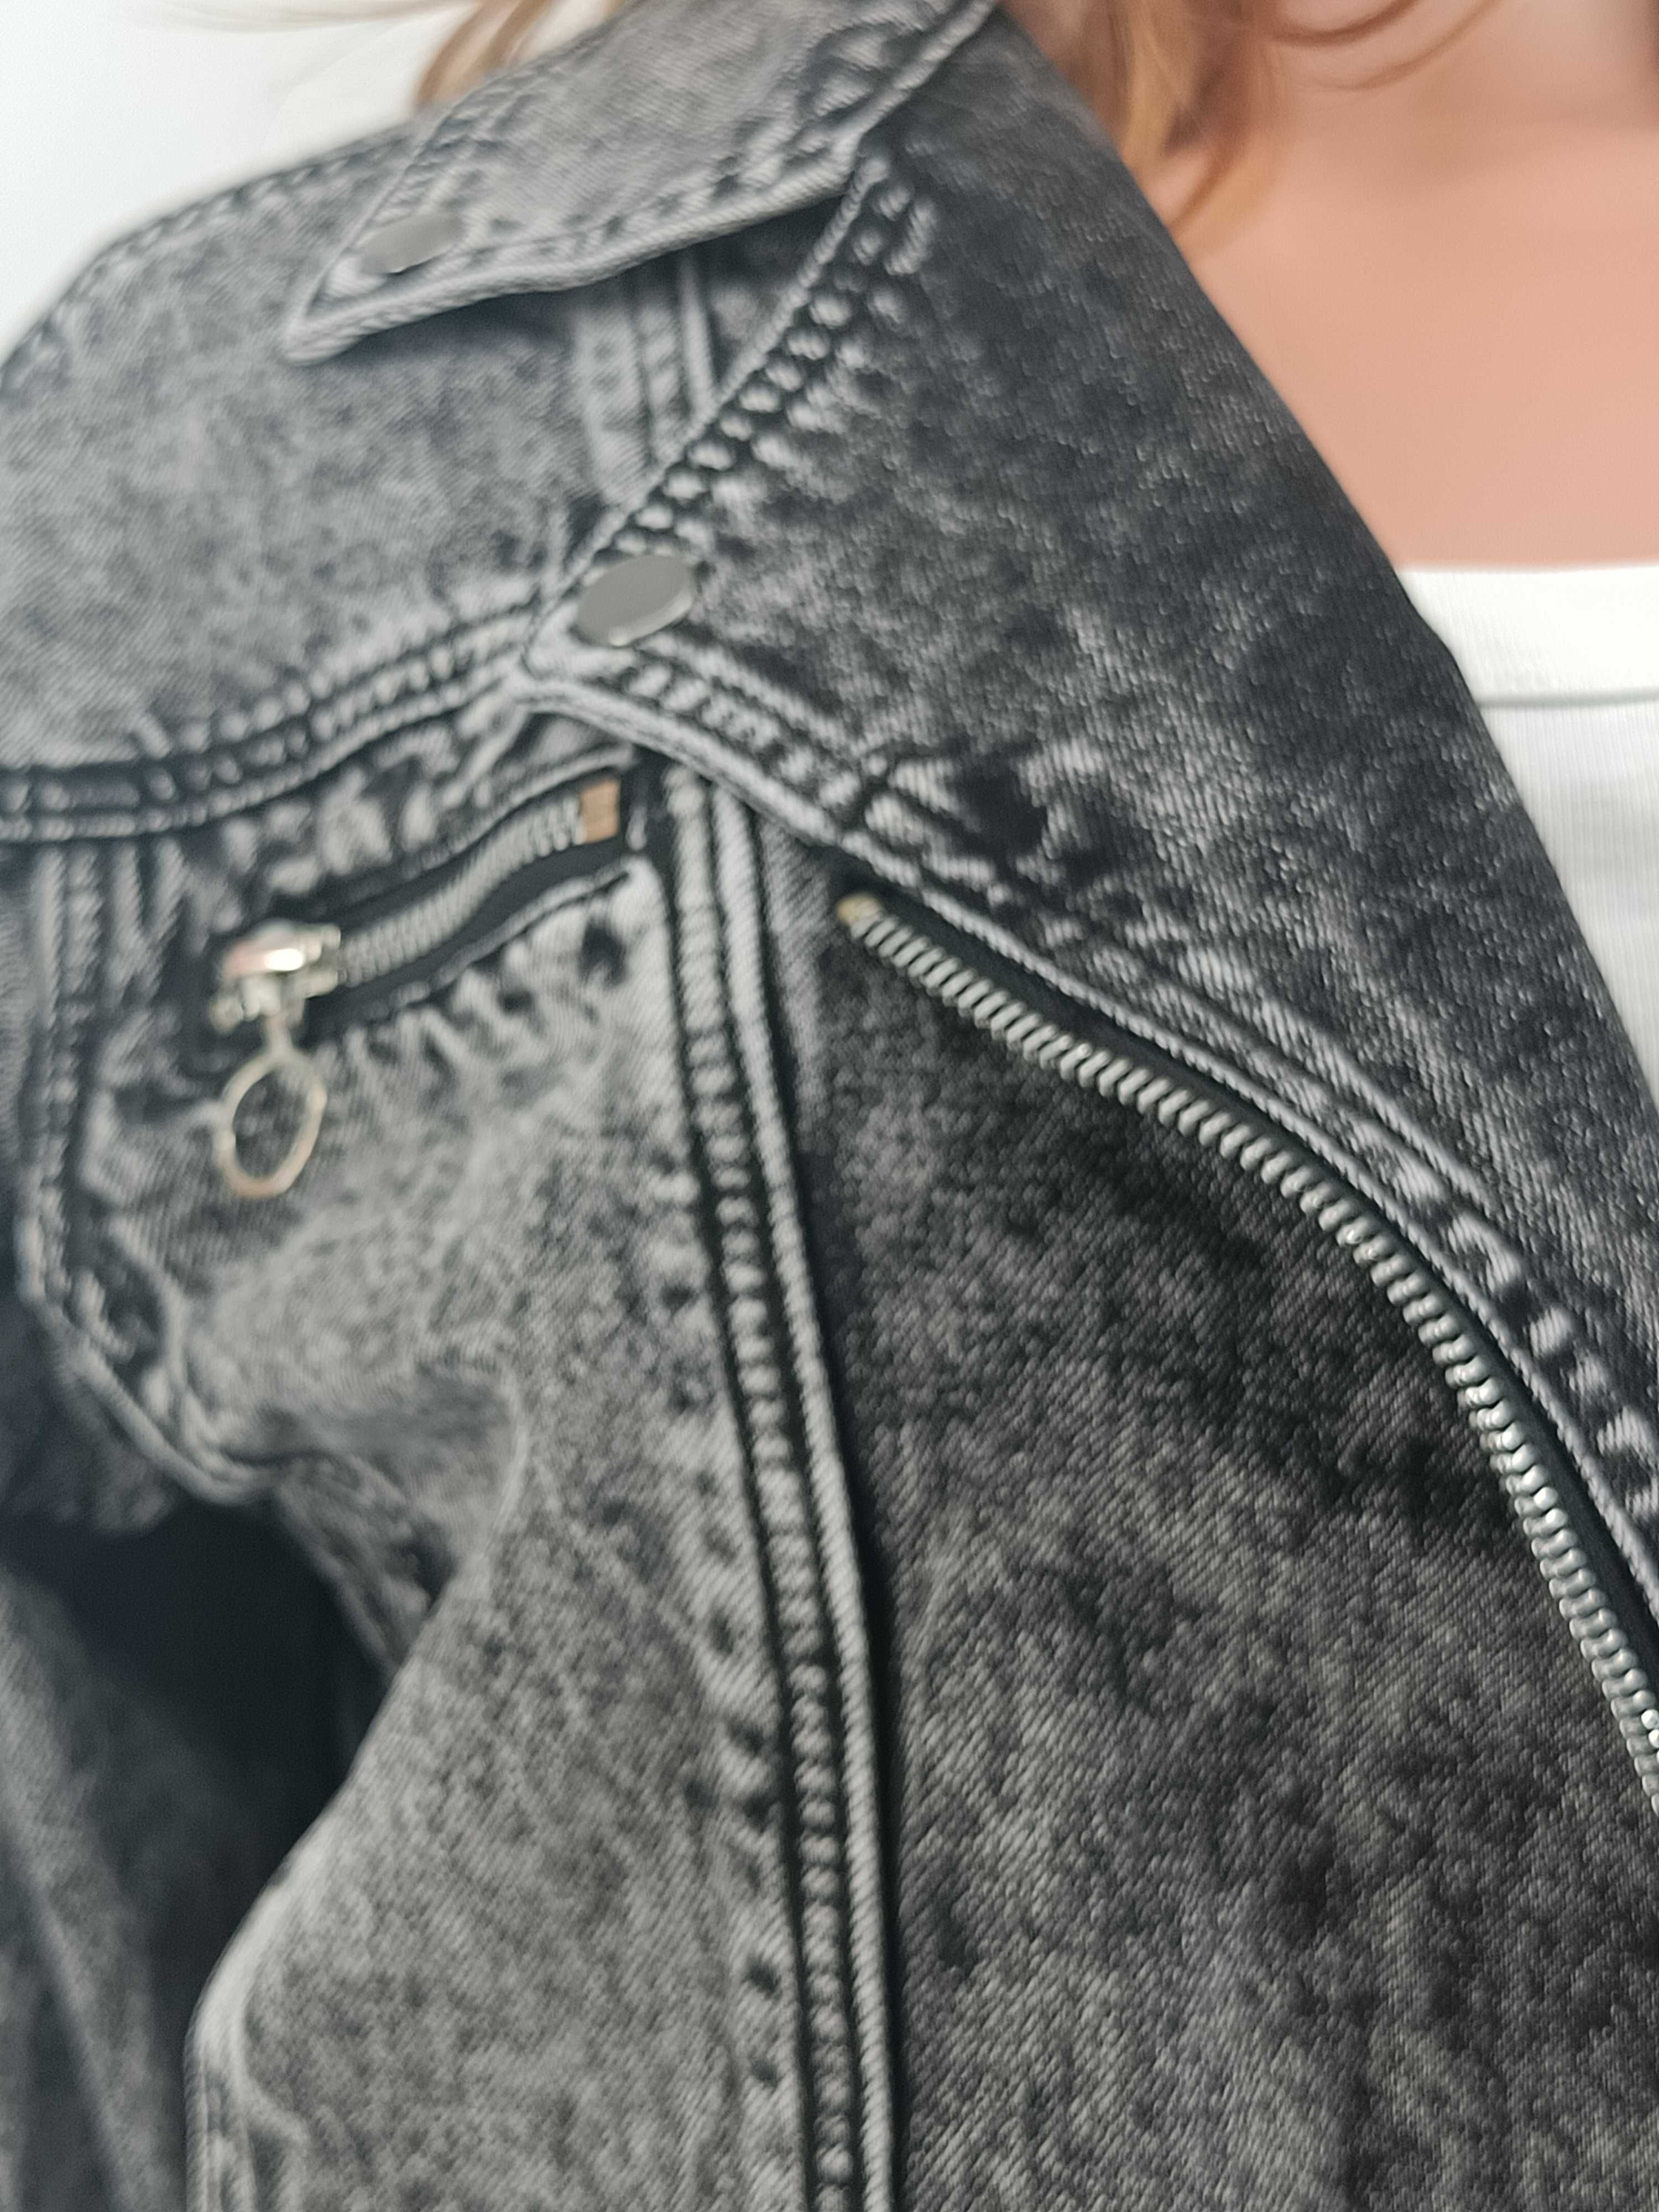 Kurtka jeansowa RAMONESKA szara XS 34